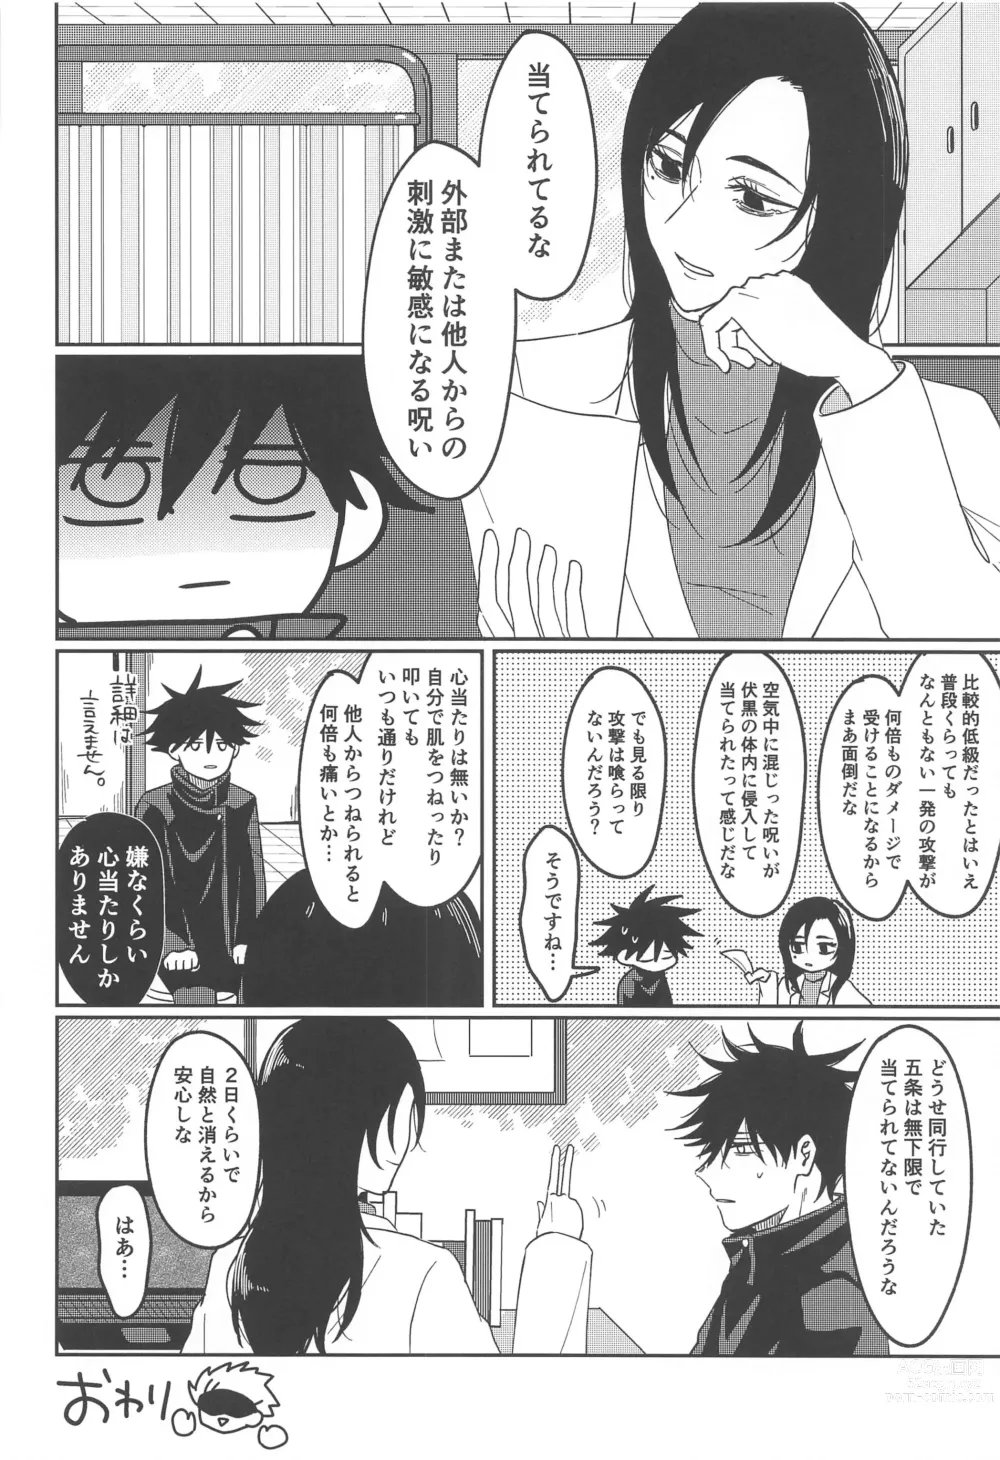 Page 23 of doujinshi Kanjiru Wake ga Nai